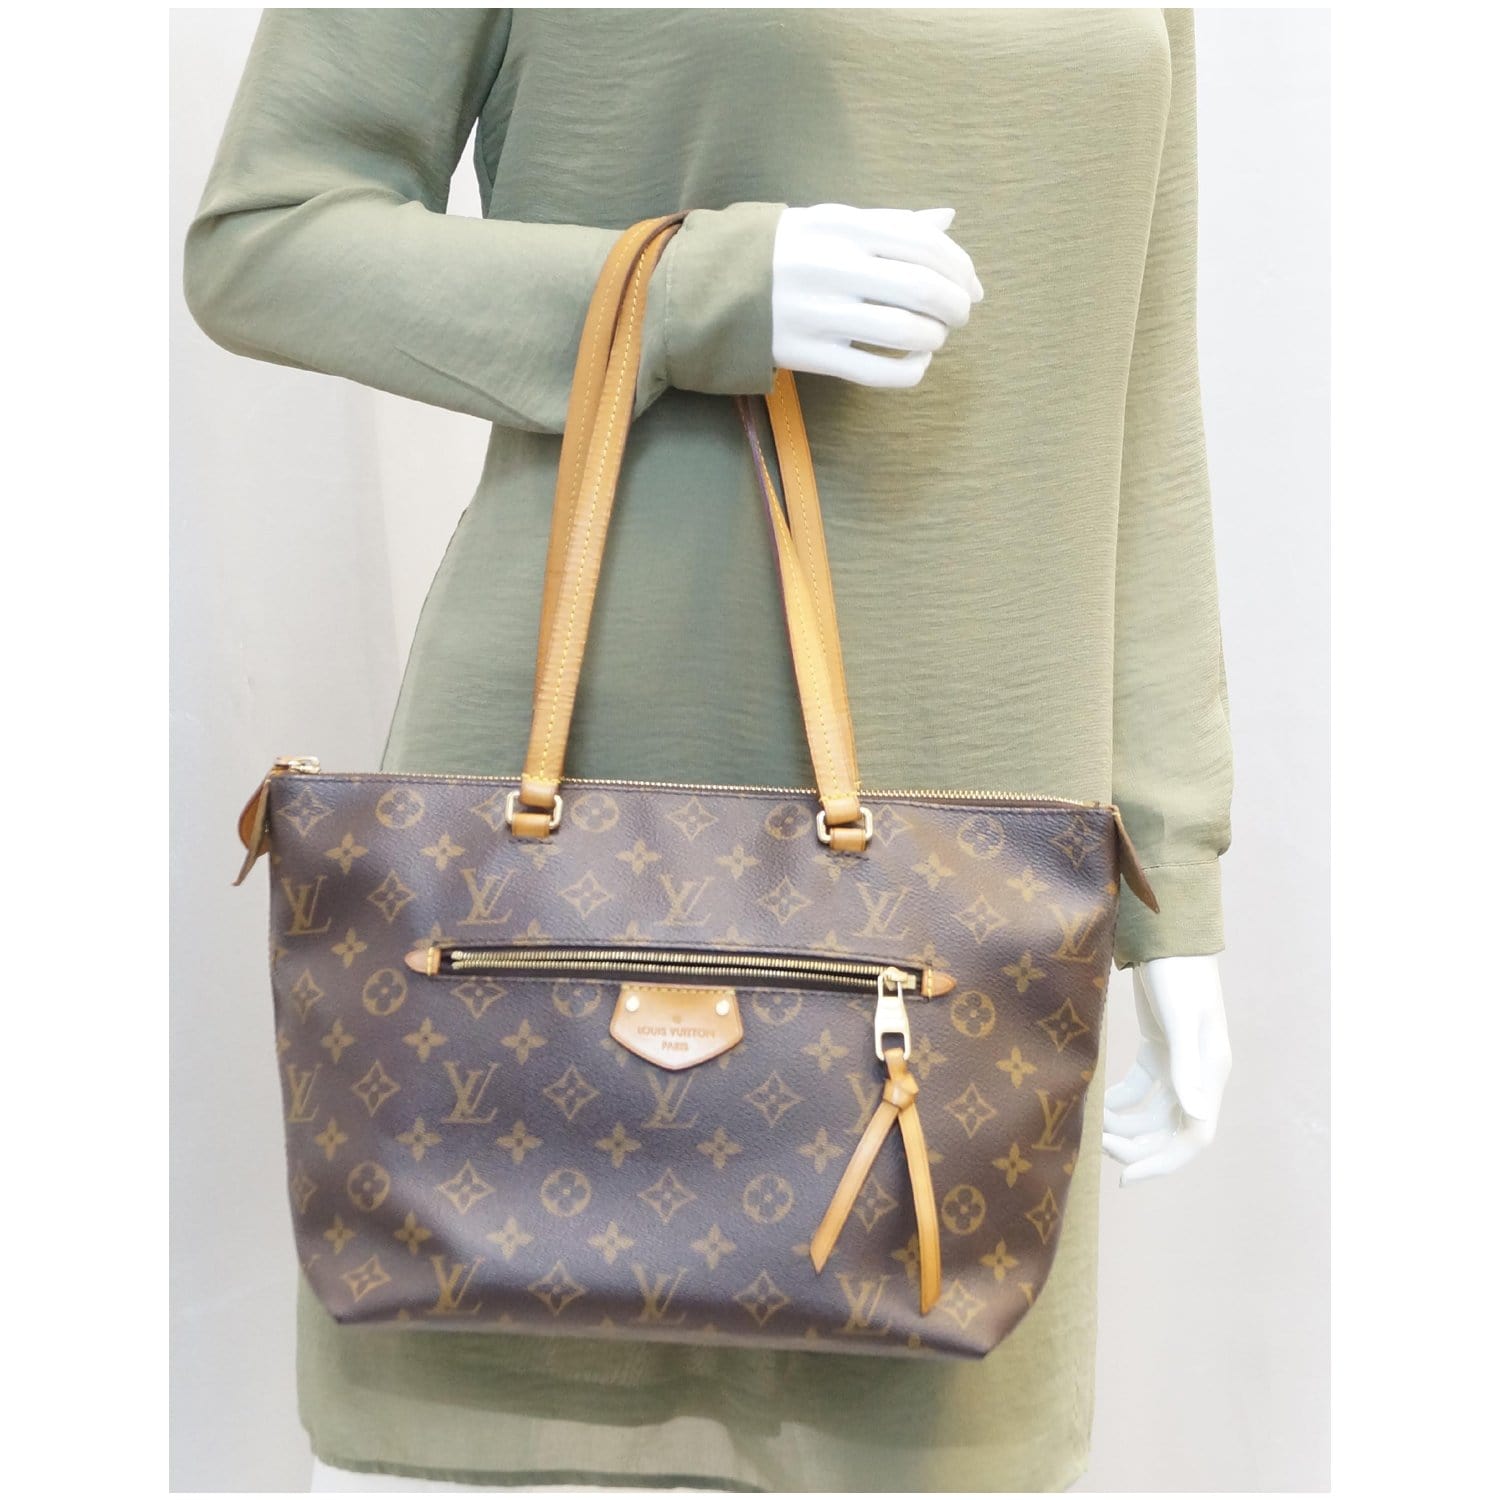 Louis Vuitton, Bags, Almost New Authentic Louis Vuitton Iena Pm